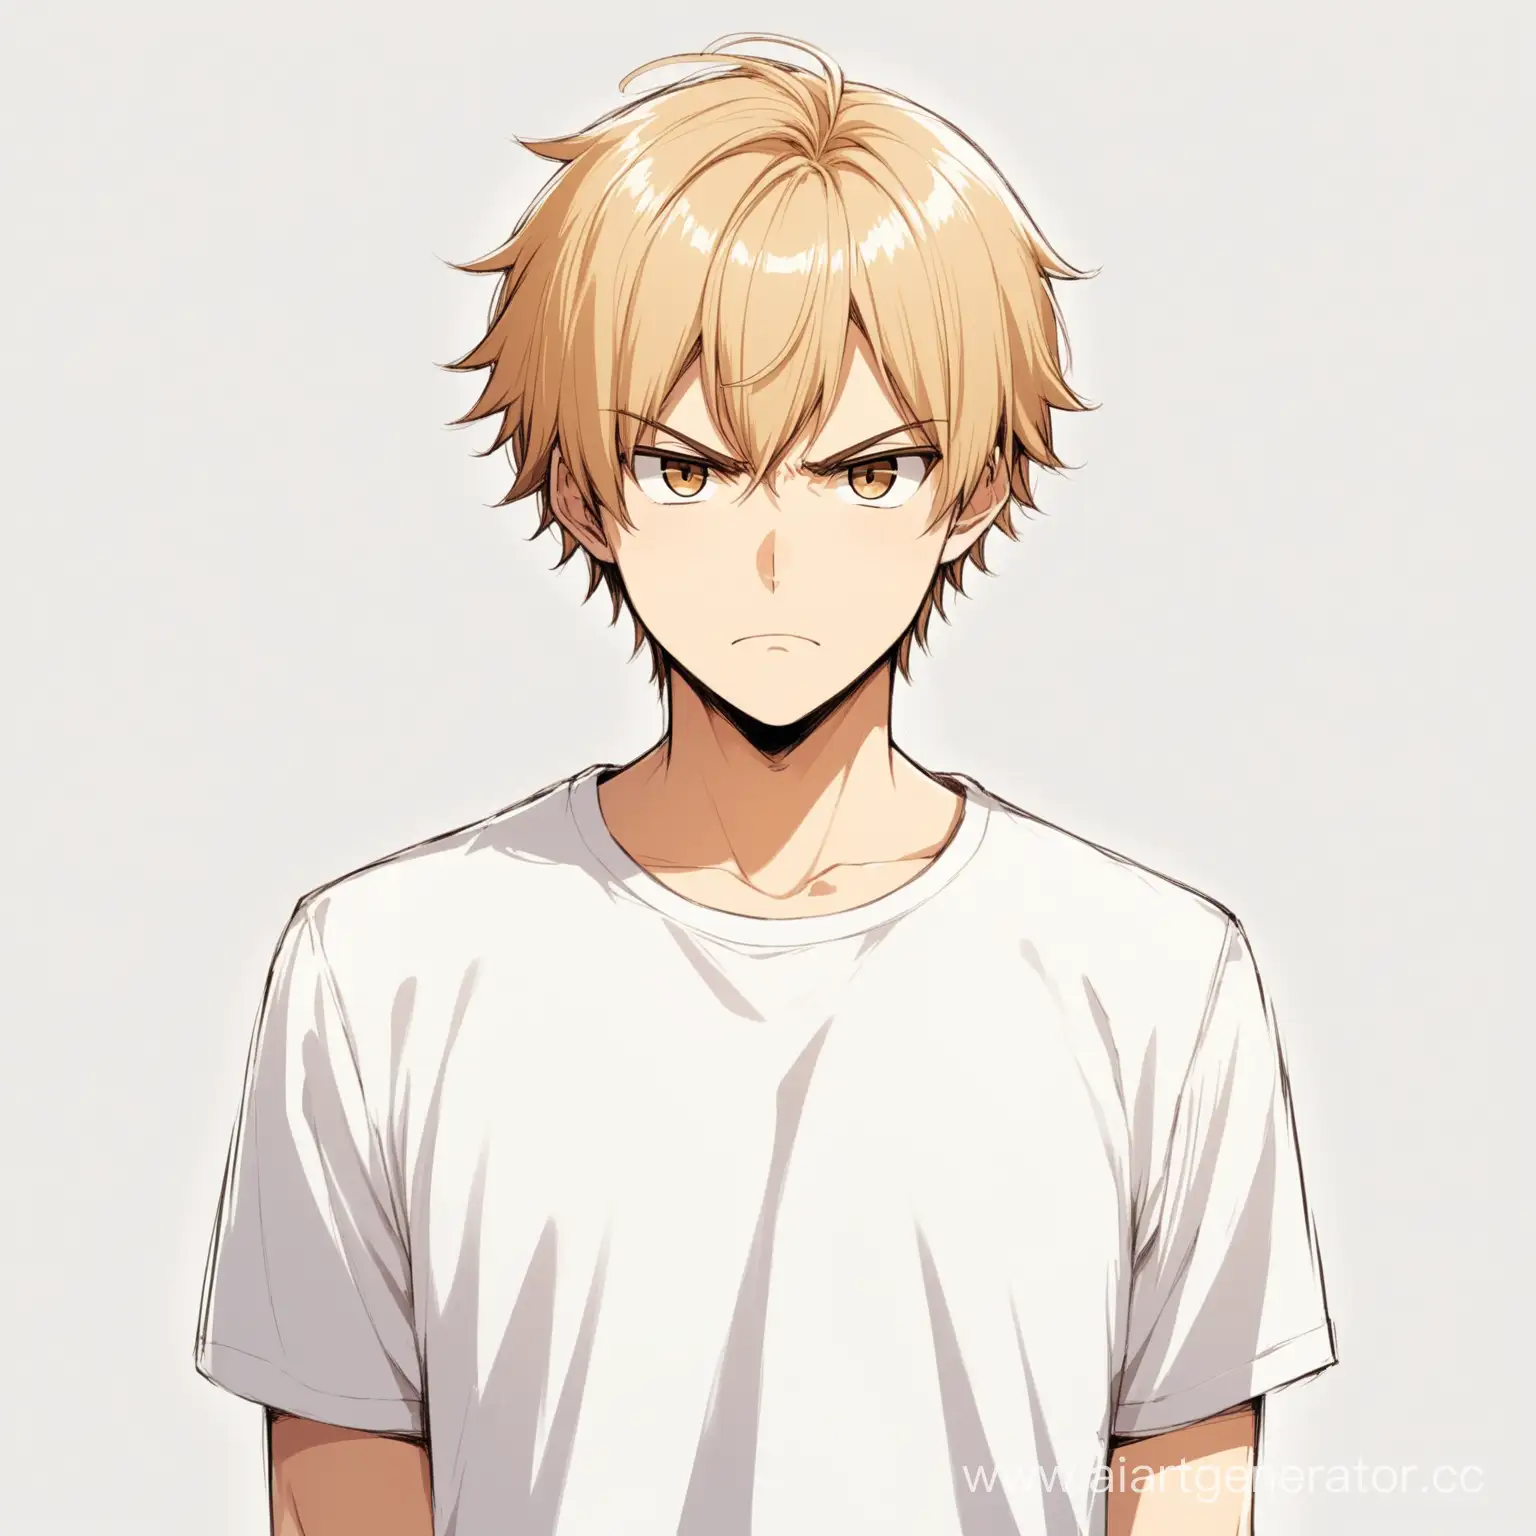 Аниме персонаж, парень со светлыми ухоженными короткими волосами и с карими глазами, в белой футболке, осуждающее выражение лица, изолированный объект, чтобы его было видно полностью и на белом фоне.